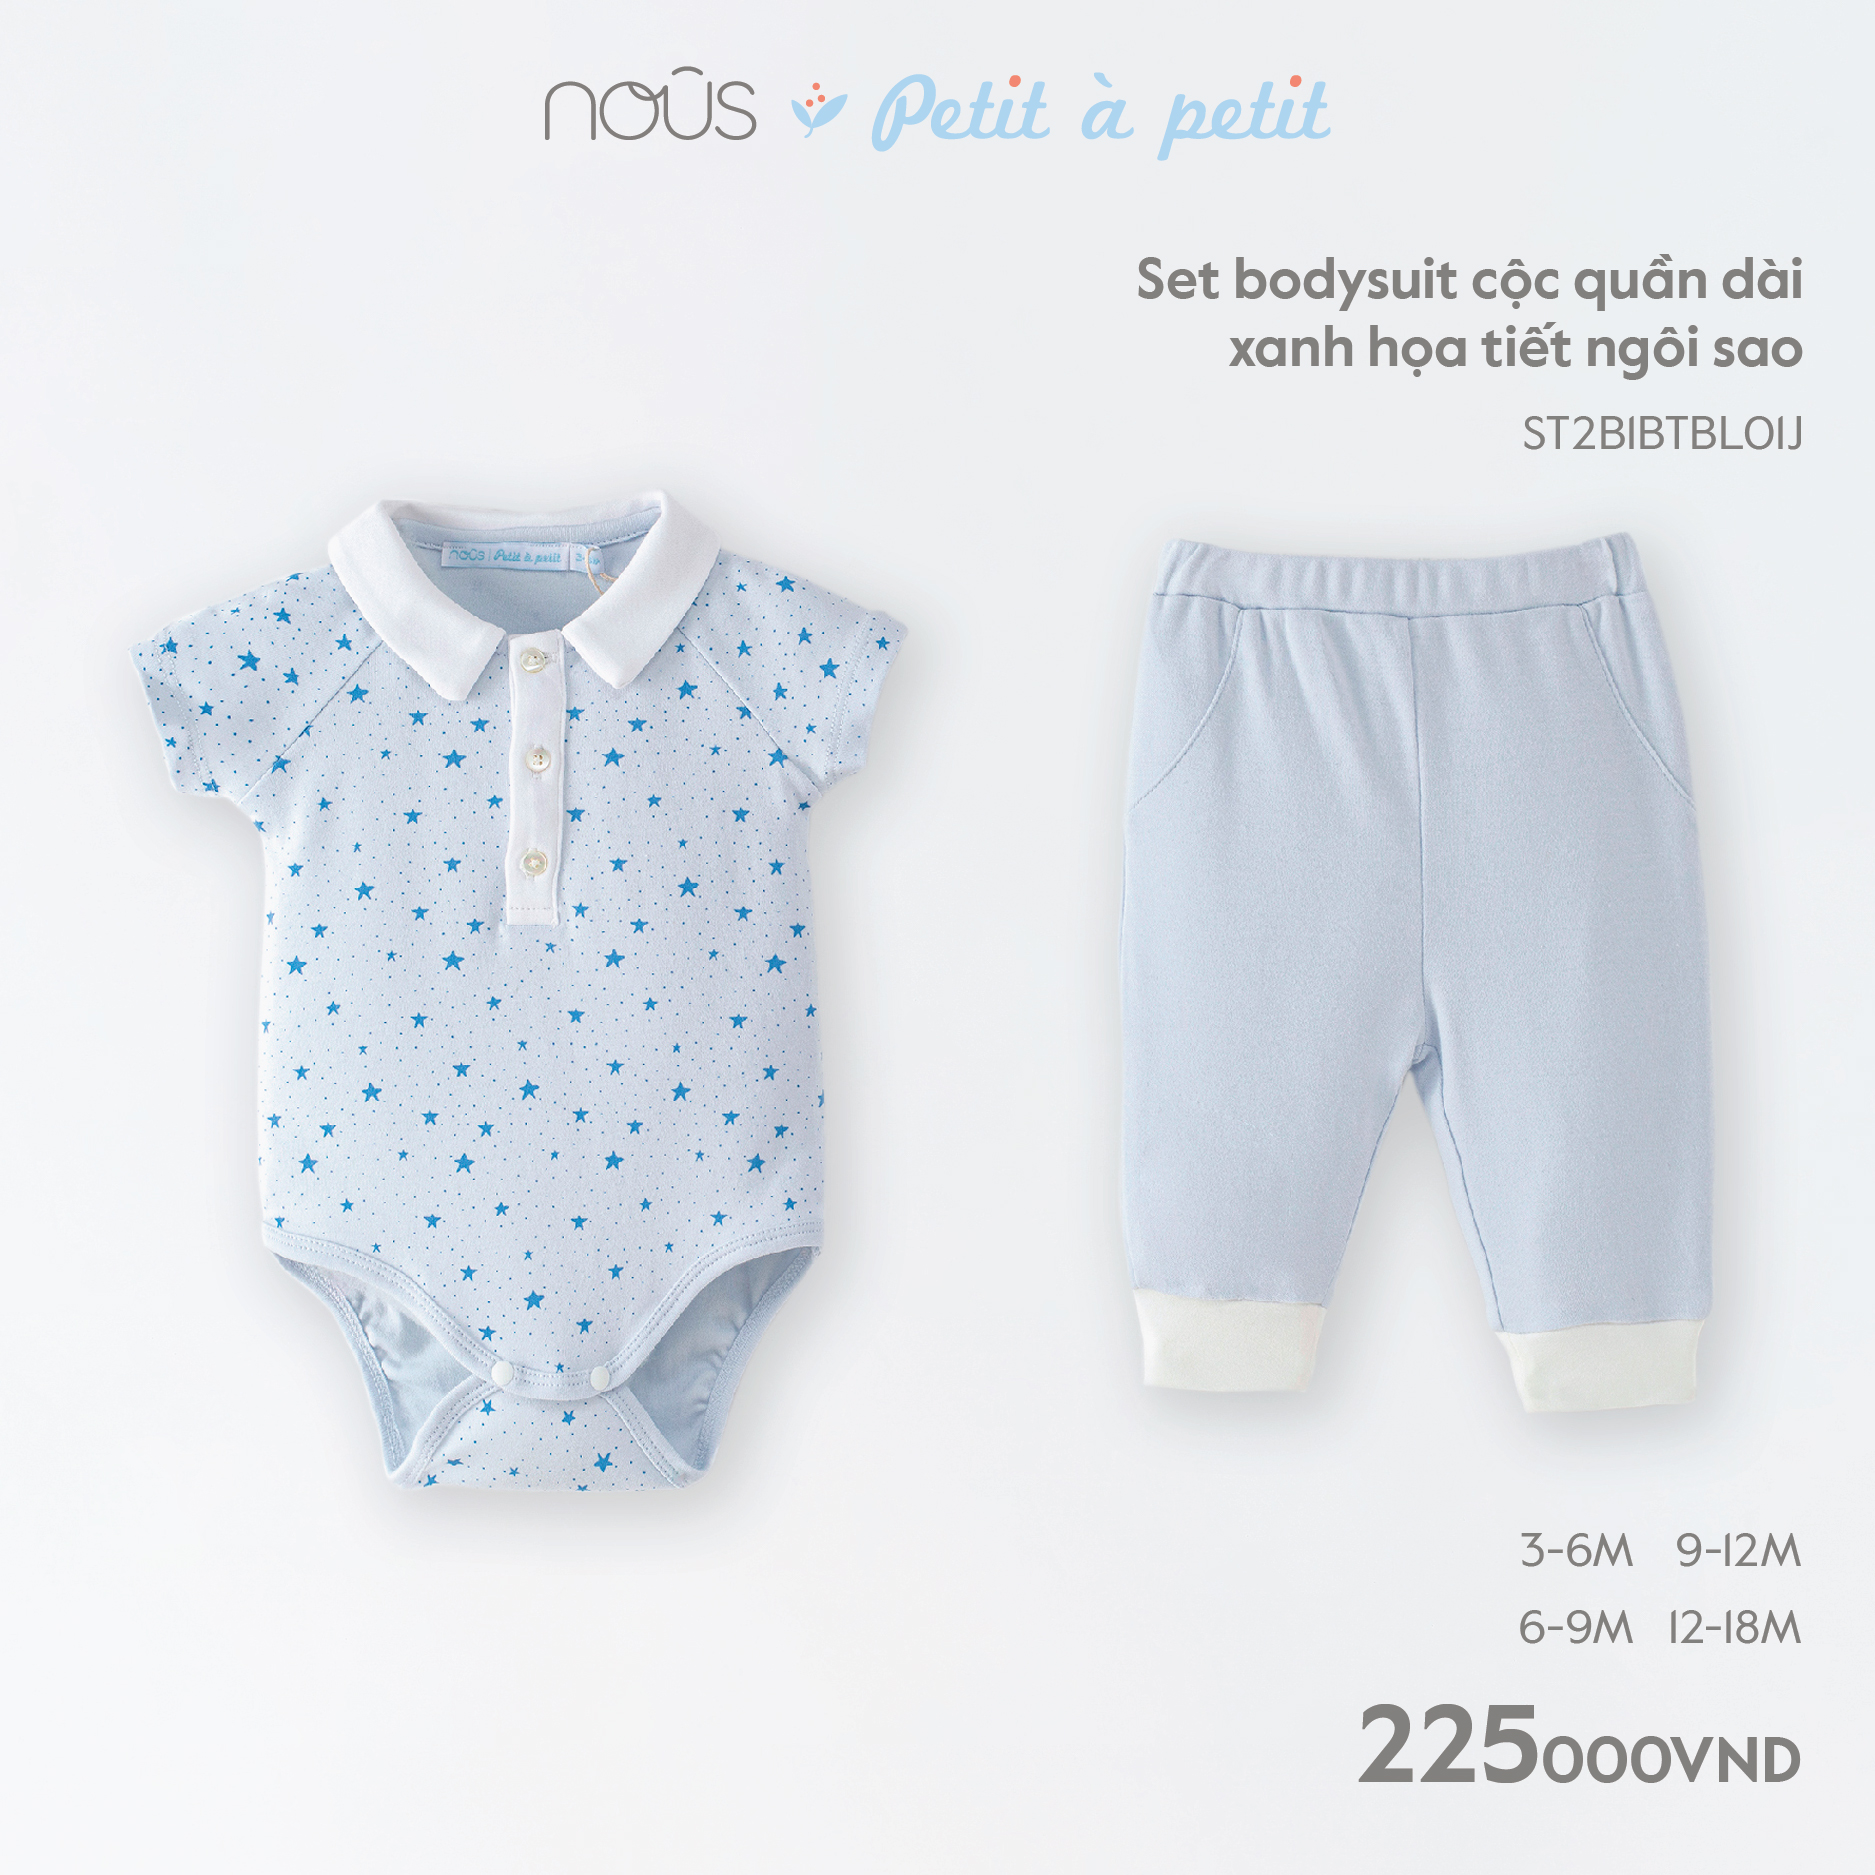 Bộ quần áo cộc liền thân Nous màu xanh, trắng chất liệu Nu Petit mềm nhẹ (Size Từ 0-3 Tháng Đến 12-18 Tháng)